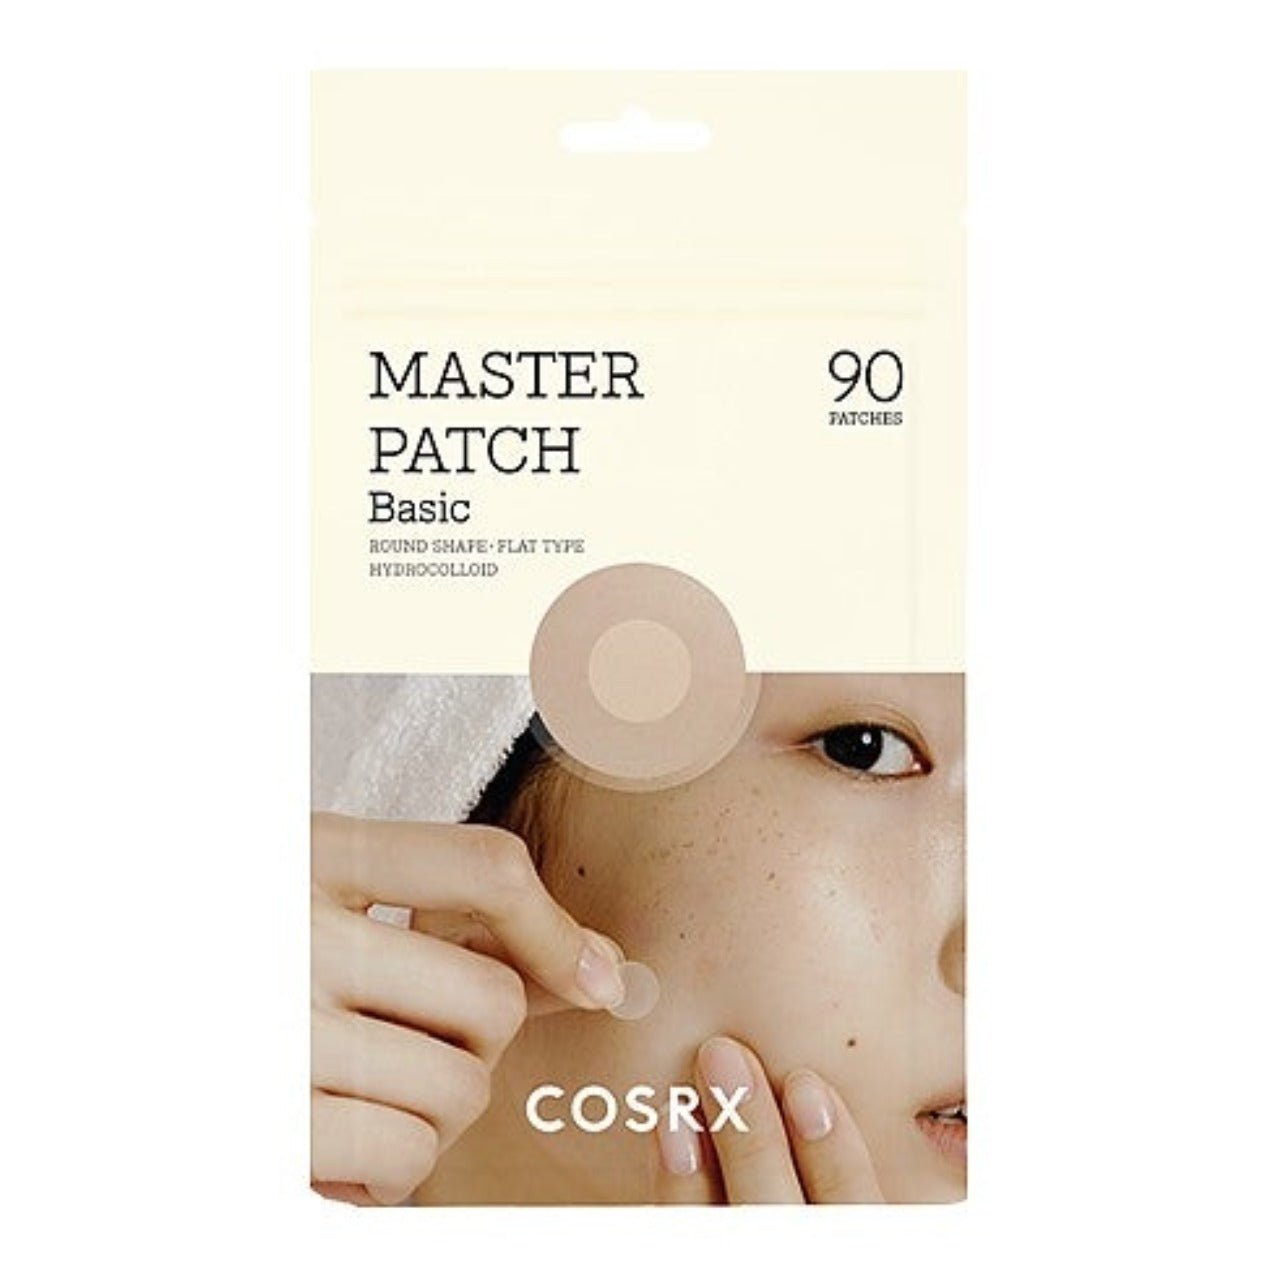 Master Patch Basic | Parche para acné.